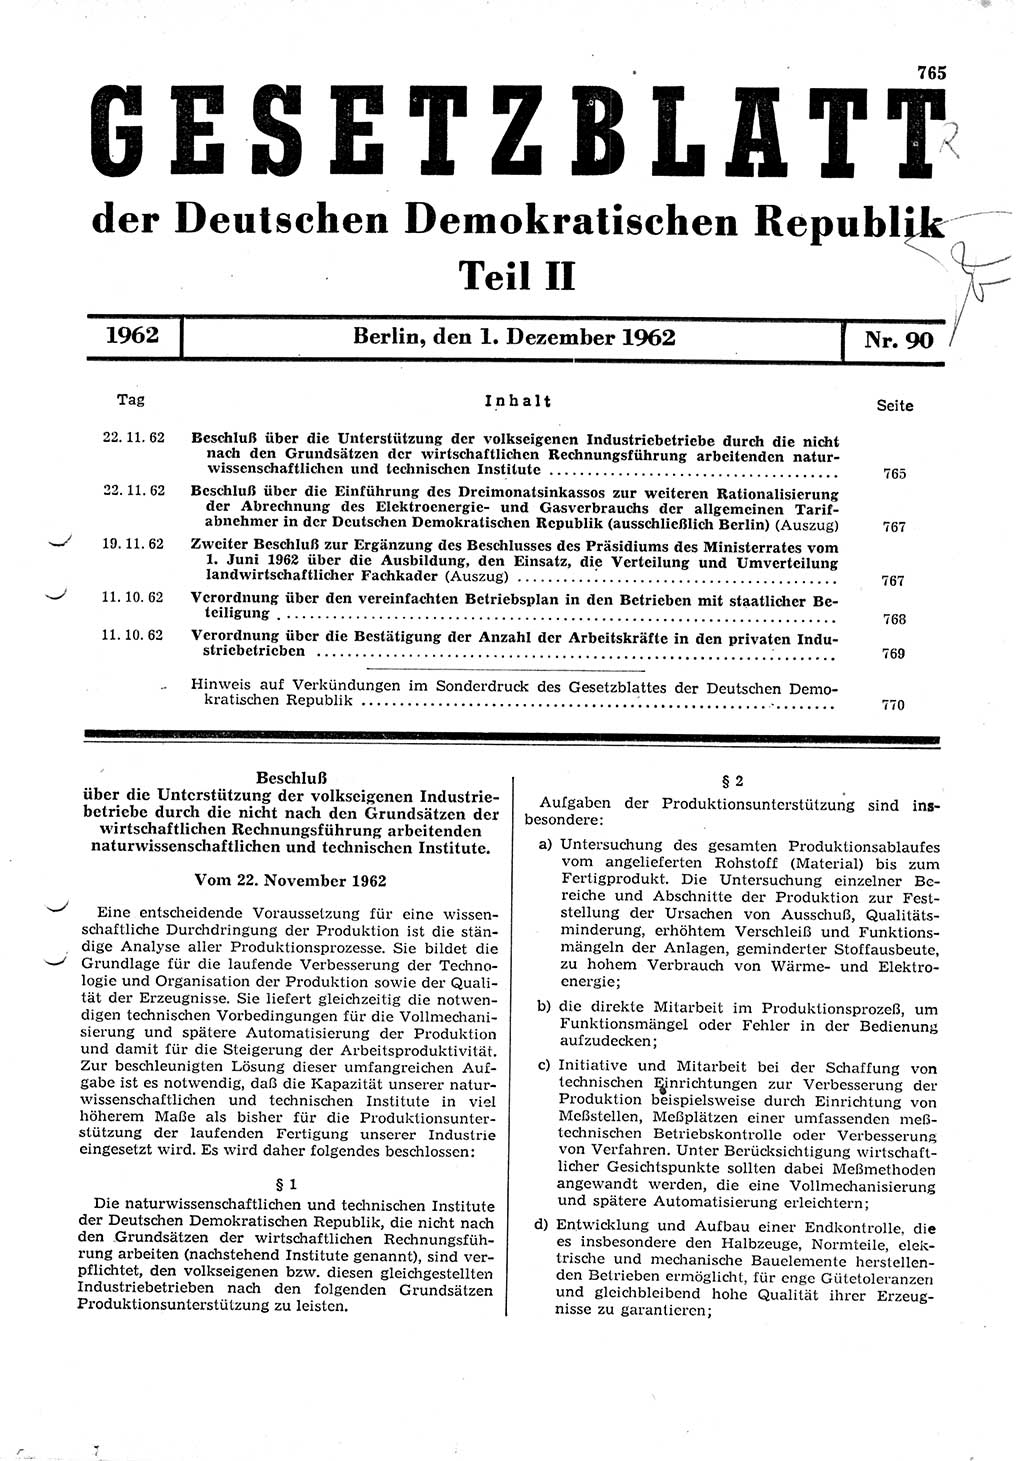 Gesetzblatt (GBl.) der Deutschen Demokratischen Republik (DDR) Teil ⅠⅠ 1962, Seite 765 (GBl. DDR ⅠⅠ 1962, S. 765)